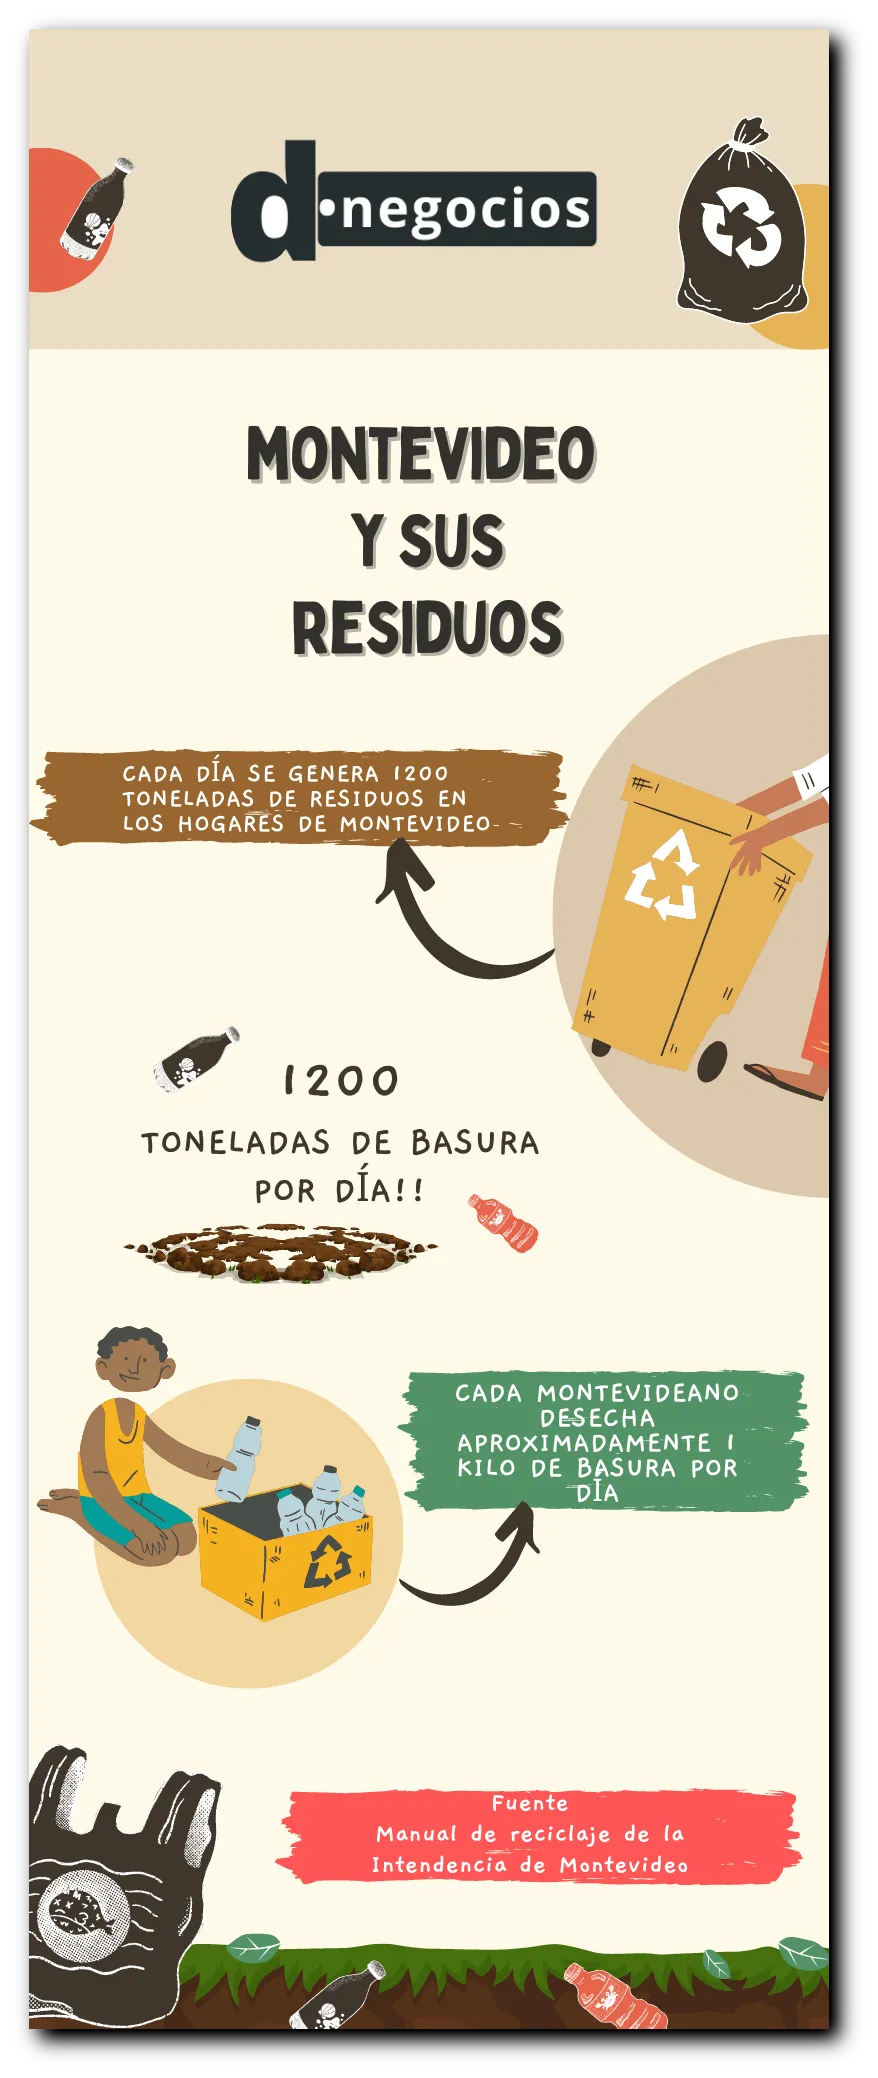 Infografía sobre Montevideo y sus residuos.